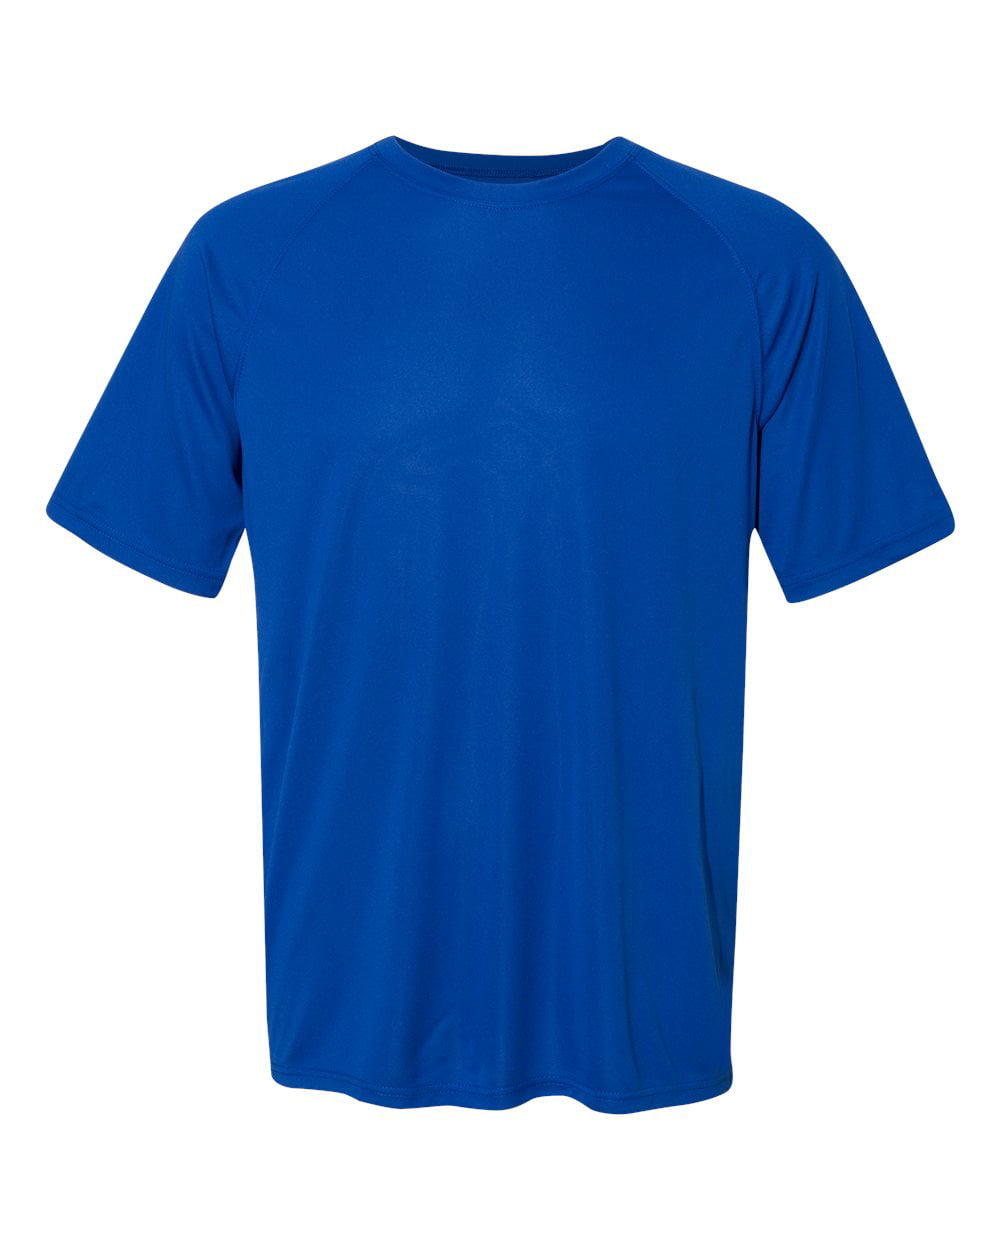 2790 Augusta Sportswear Gym Shirt Men's Attain Wicking - Walmart.com